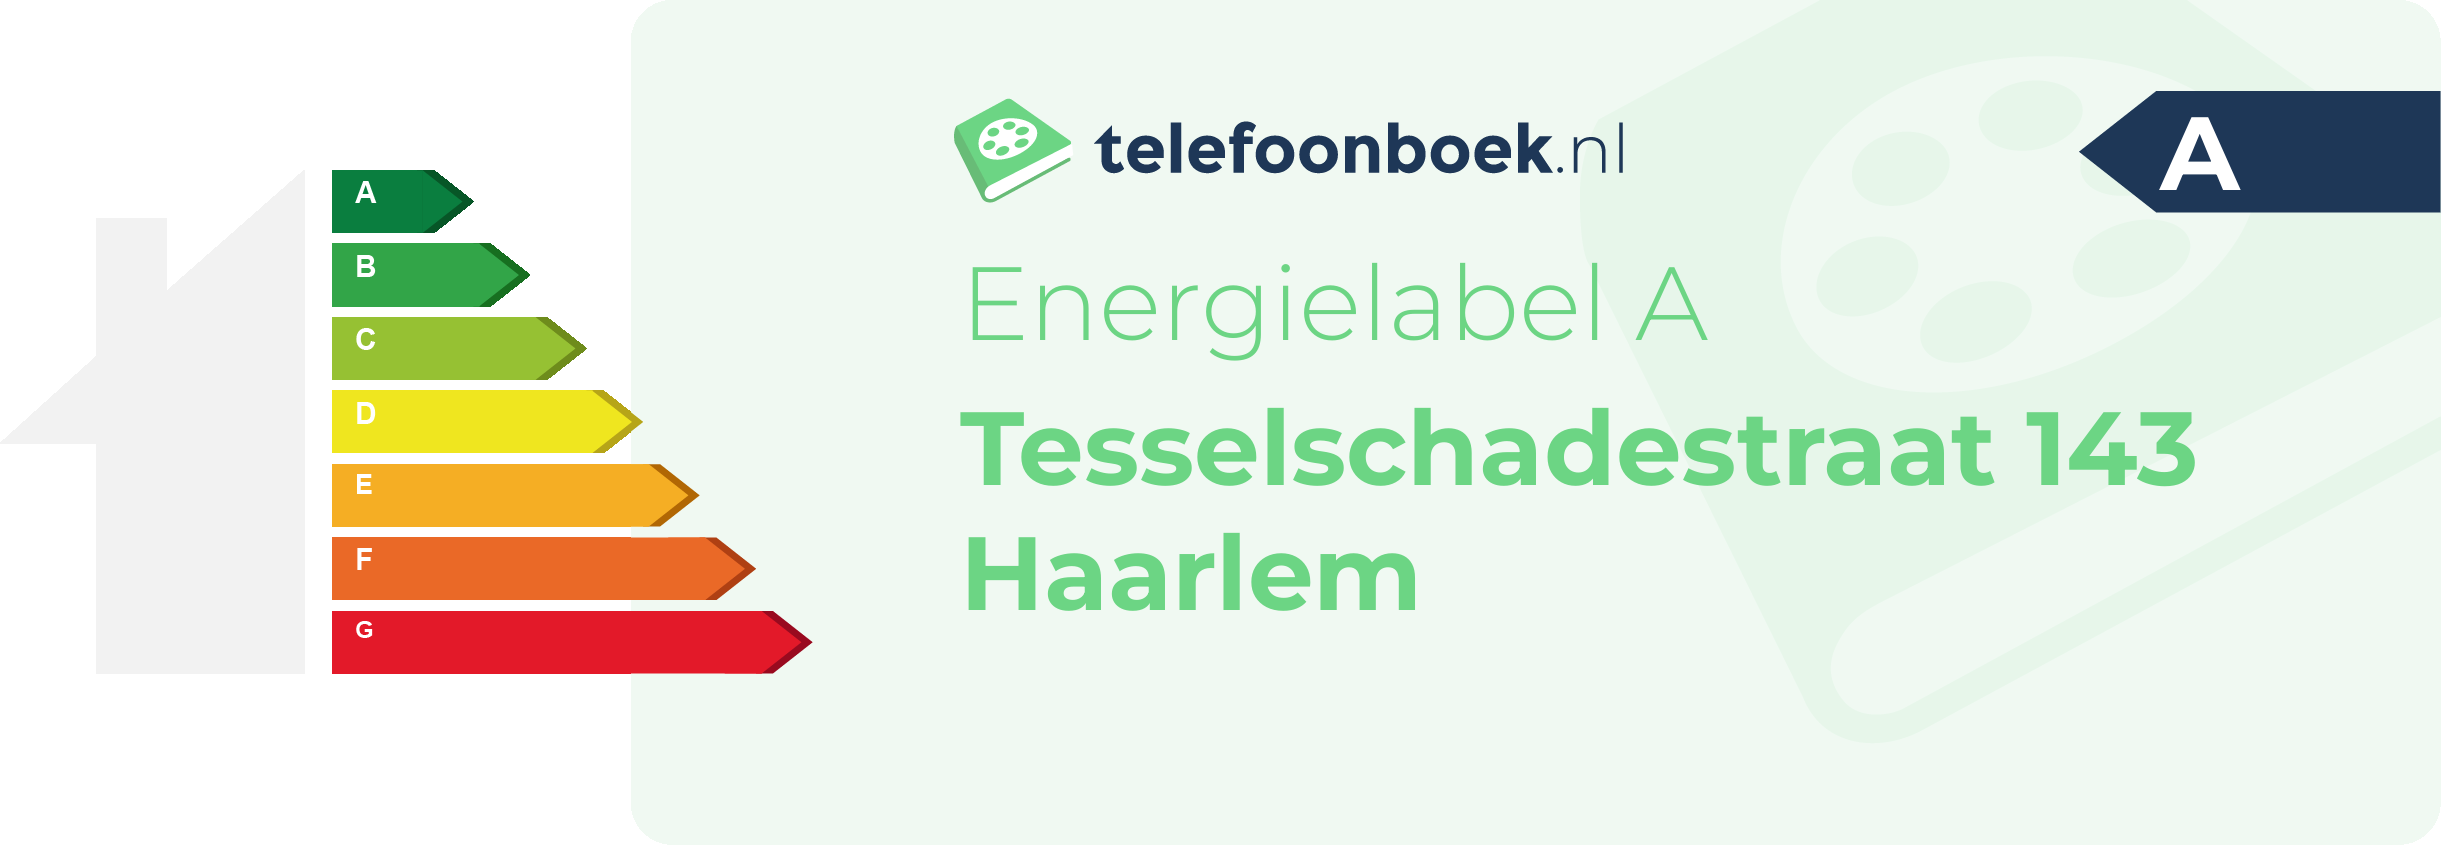 Energielabel Tesselschadestraat 143 Haarlem